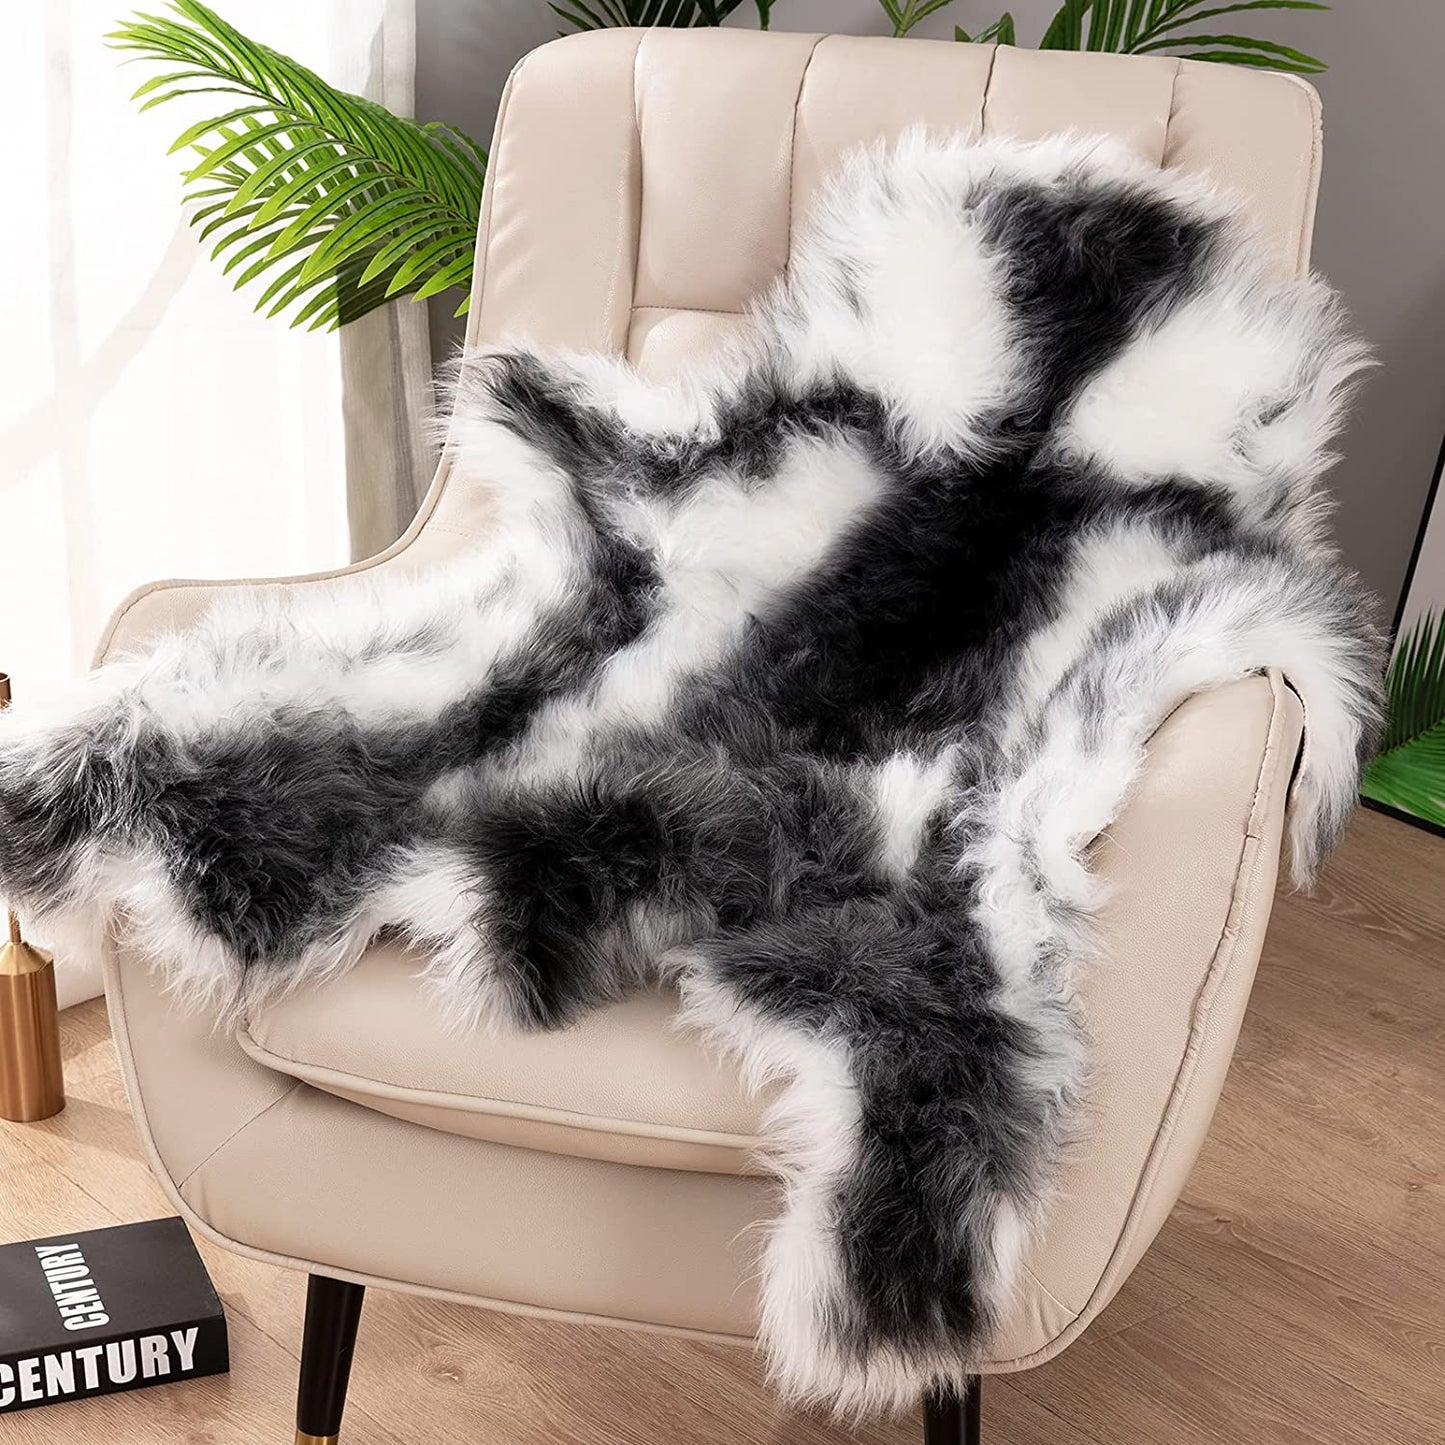 Soft Fur Rugs Fake Reindeer Hide Area Rug Fluffy Faux Fur Carpet